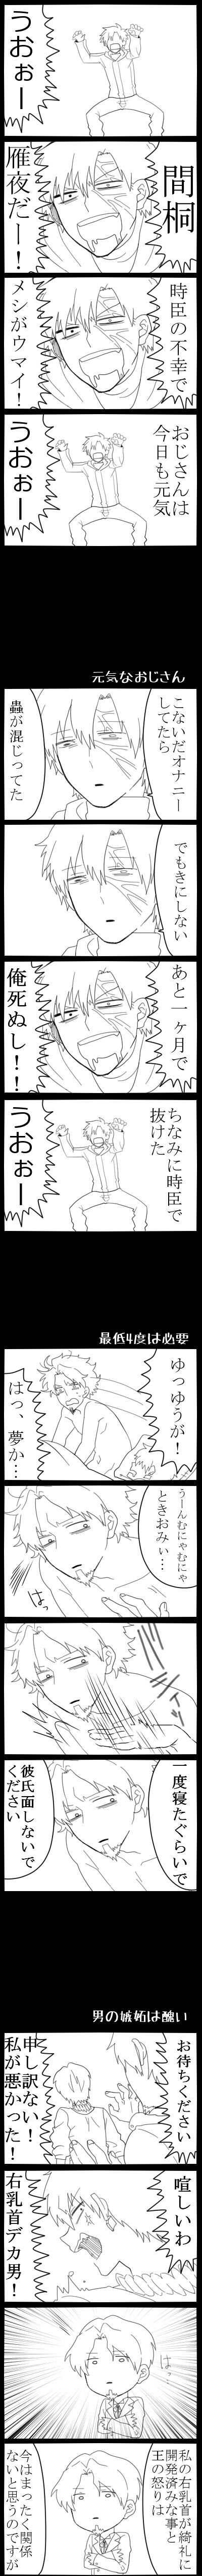 【腐】疲于人生的人所描绘的Fate/Zero